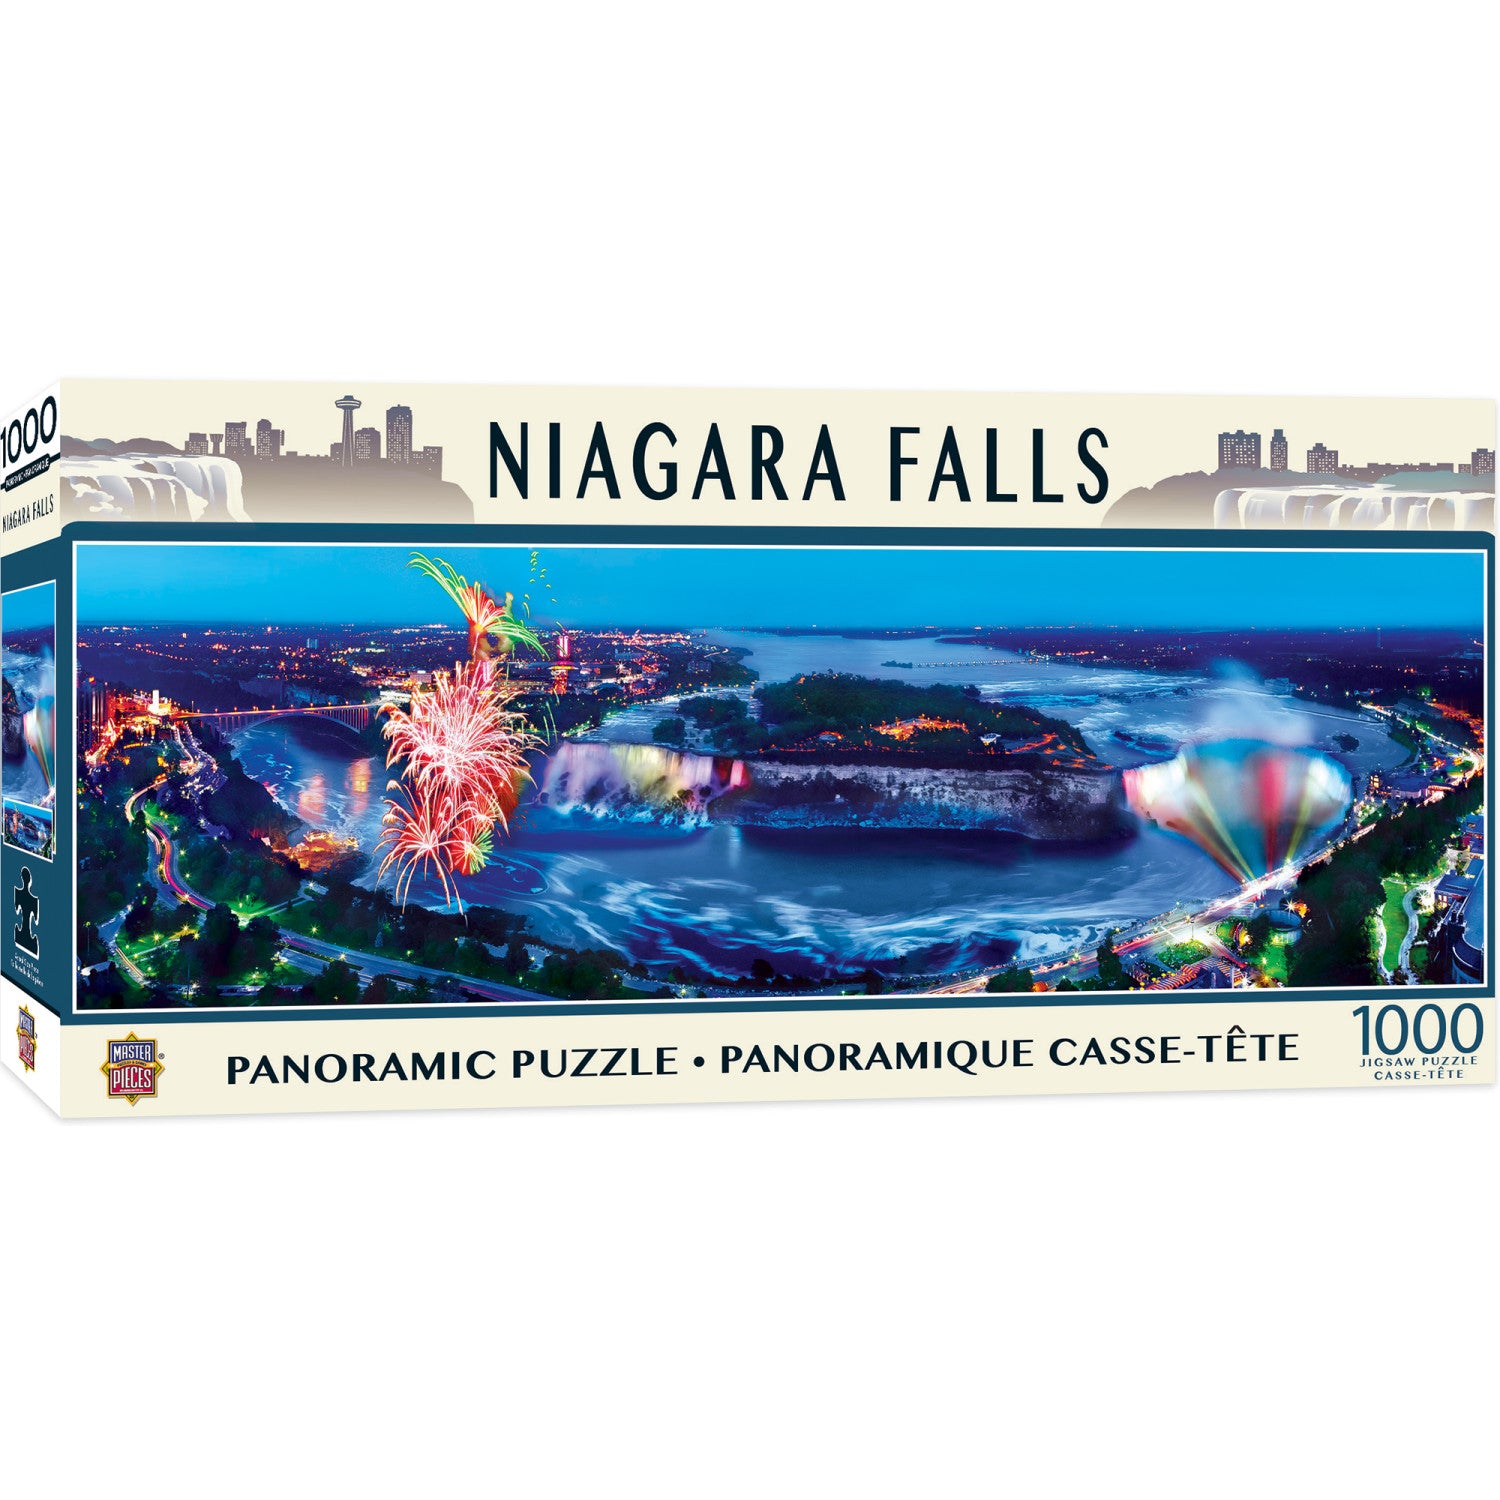 Niagra Falls 1000 Piece Panoramic Puzzle